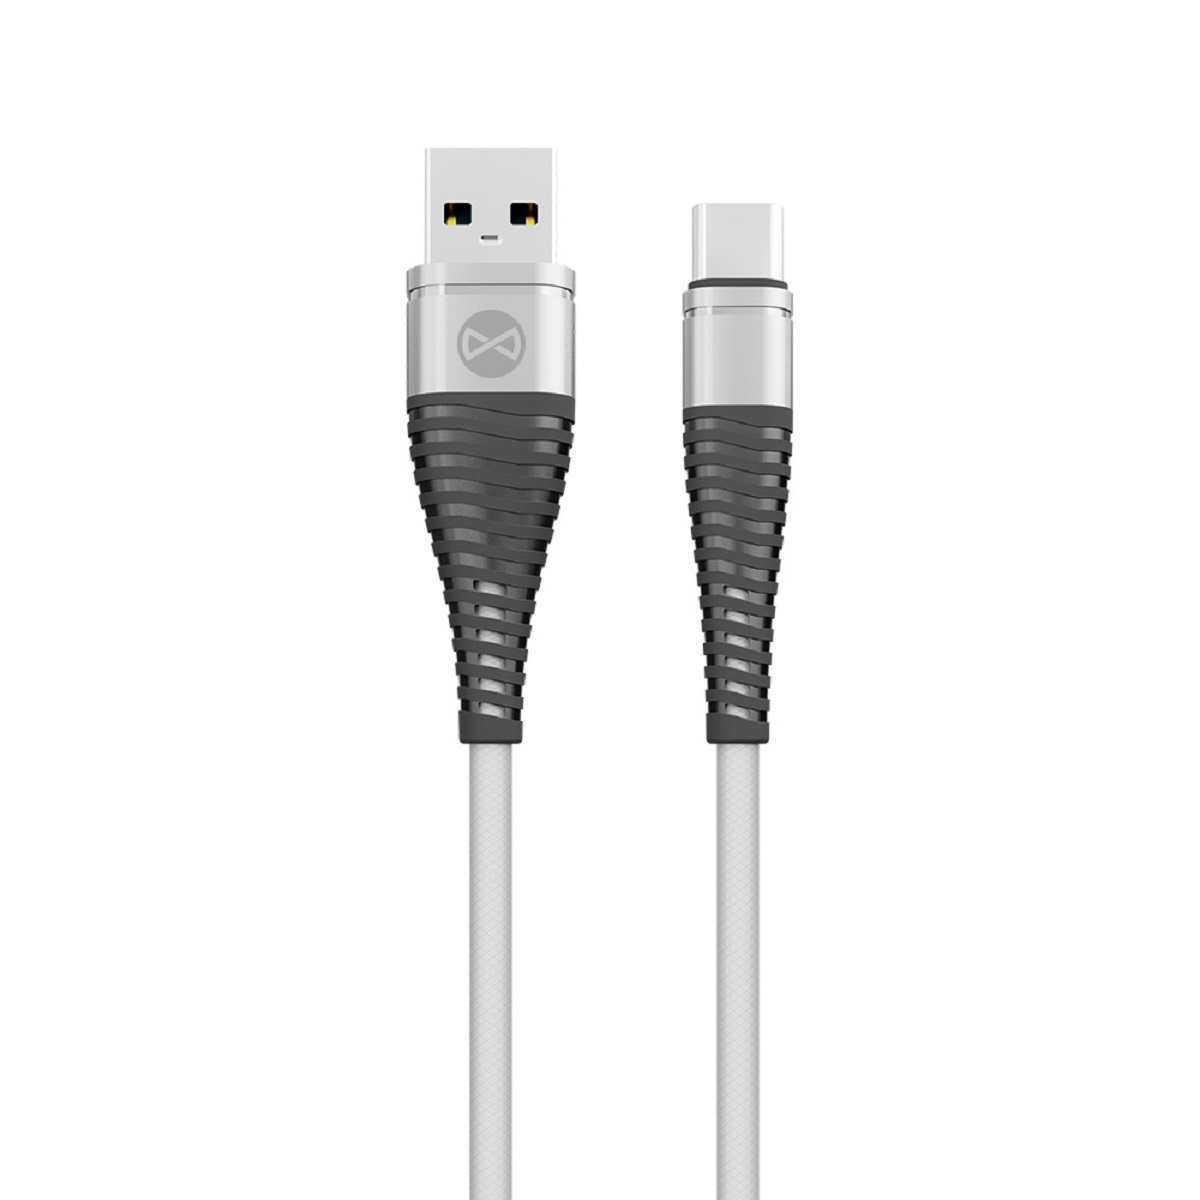 1m USB Smartphone FOREVER - Weiß Weiß, USB-C Datenkabel Ladekabel, 2A FOREVER Sync/Ladekabel Shark Kabel